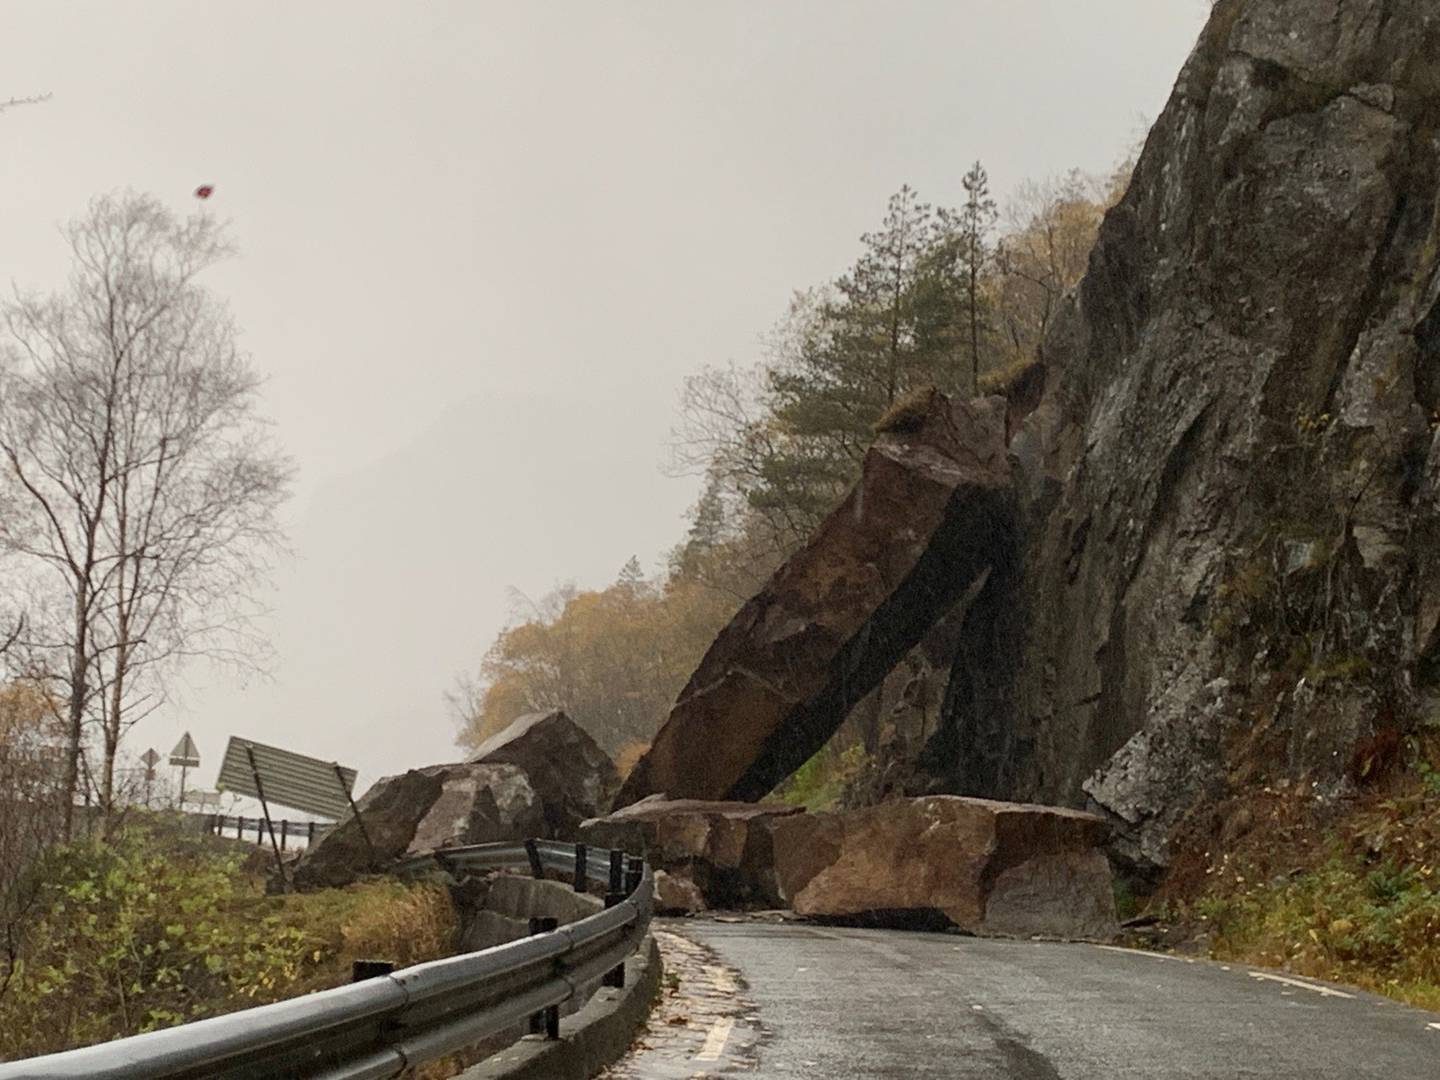 Vedlikeholdet av de eksisterende veiene innebærer mange utfordringer for Statens vegvesen, blant annet som følge av skred og ras. I slutten av oktober så det plutselig slik ut ved Lovraeidet i Rogaland.